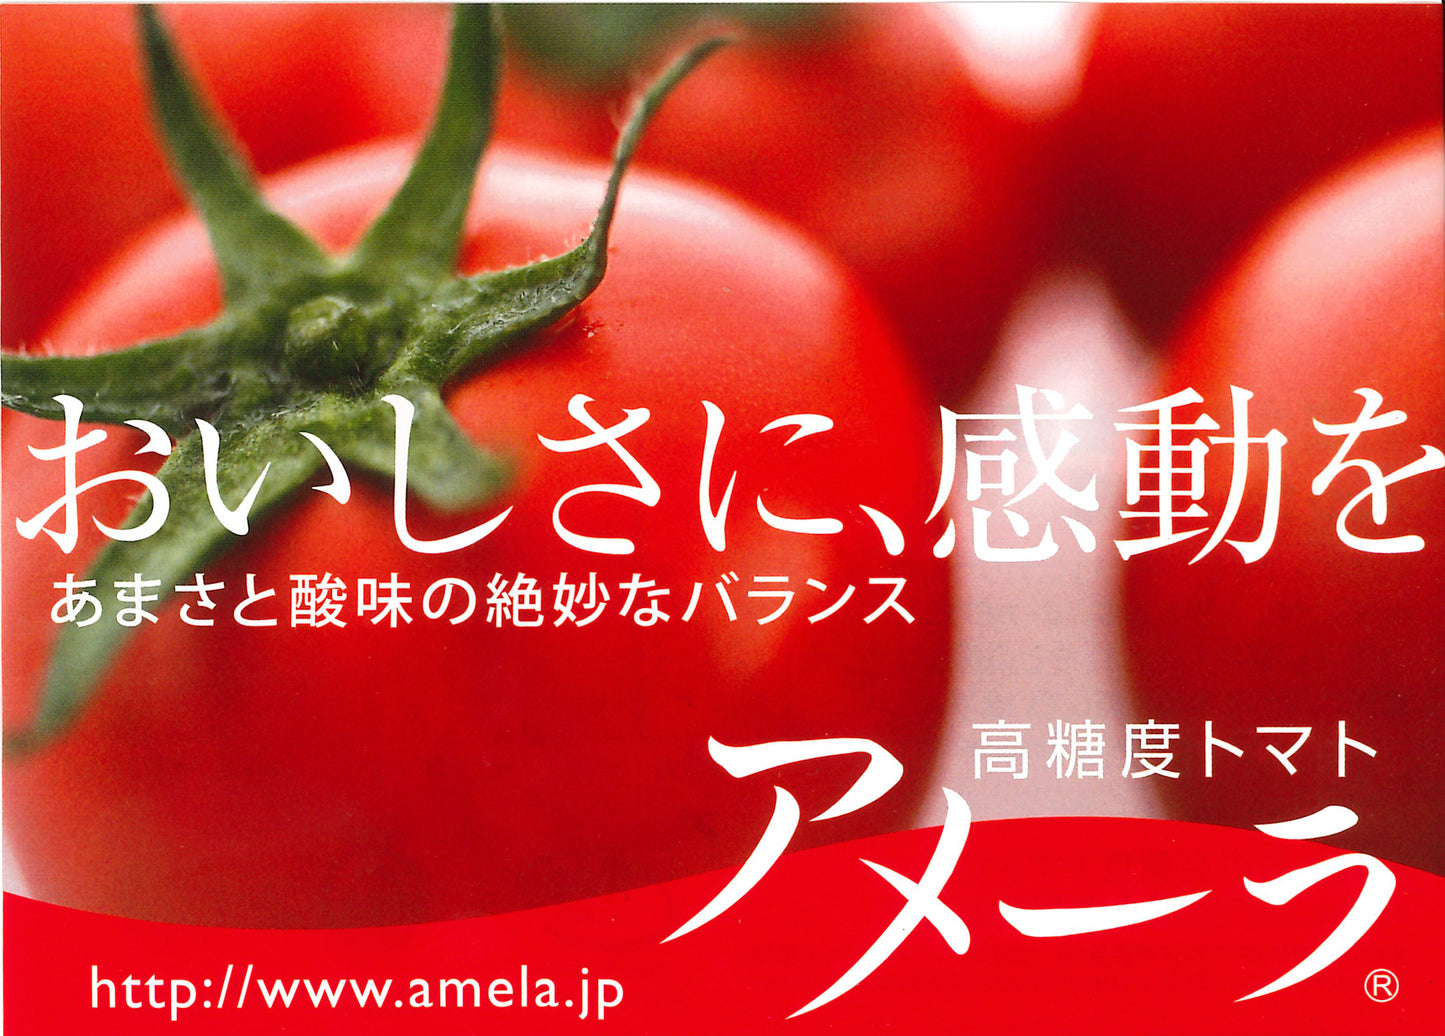 靜岡AMELA高糖度蕃茄 (每盒約900g-1KG)